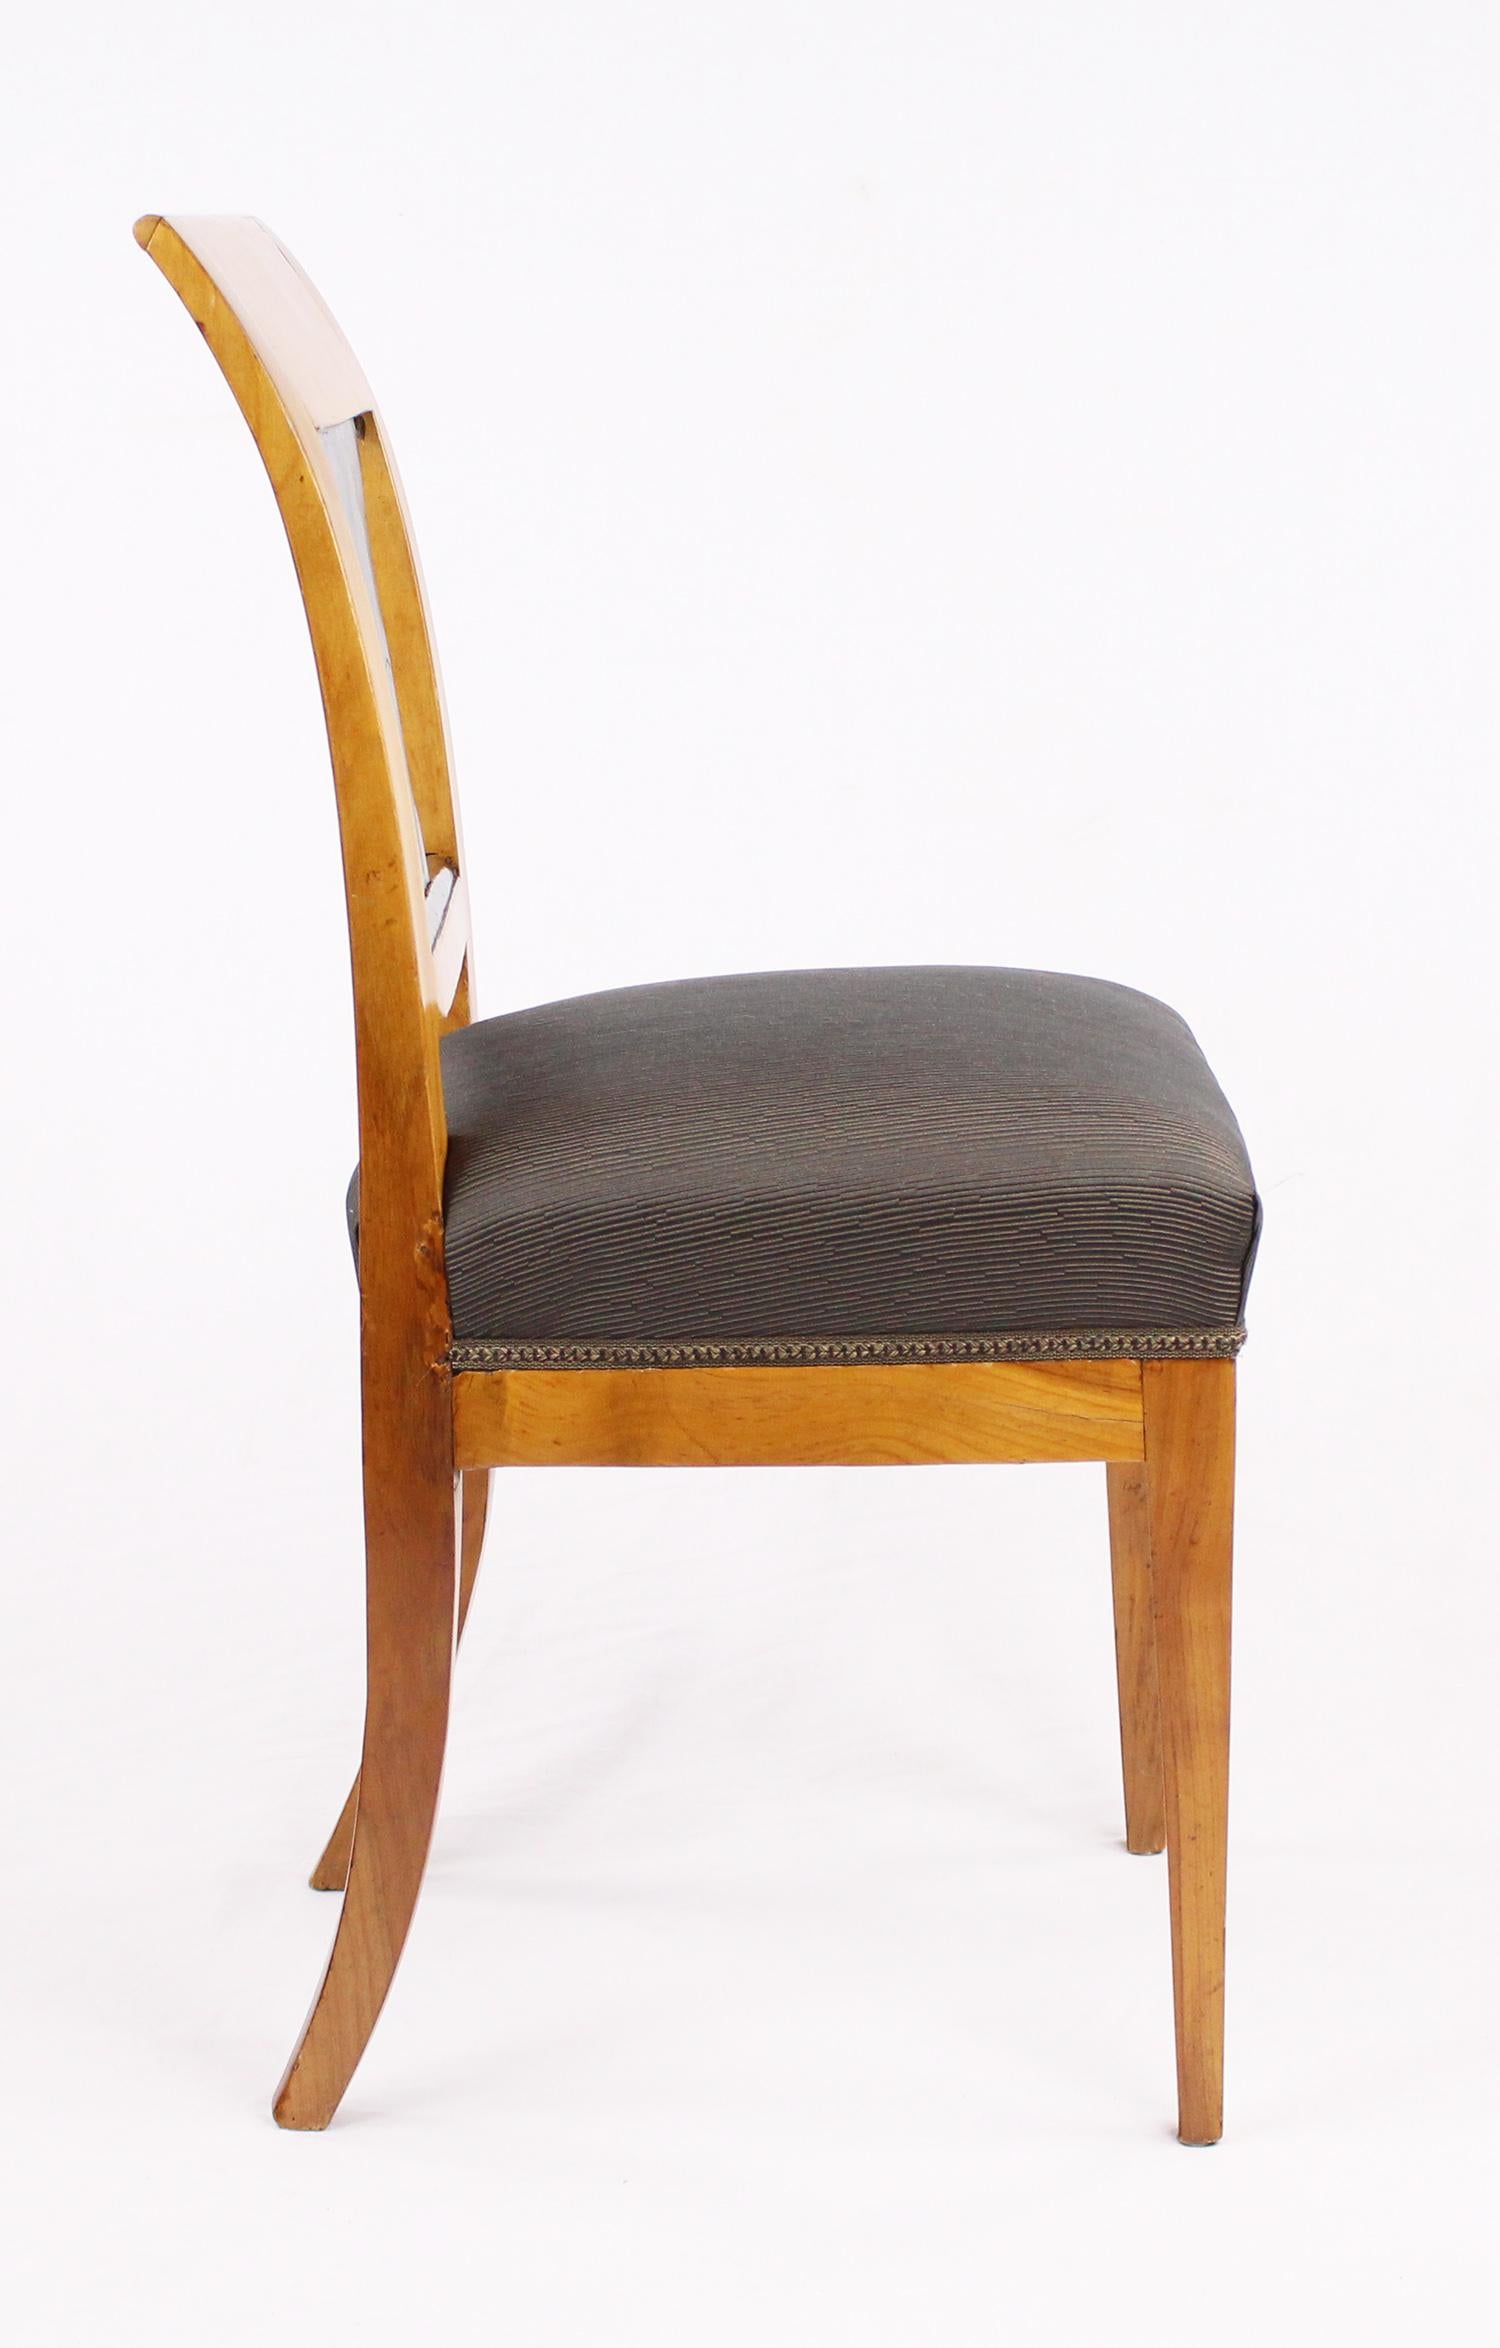 19th Century Biedermeier Period Chair, Cherrywood, circa 1820 For Sale 1